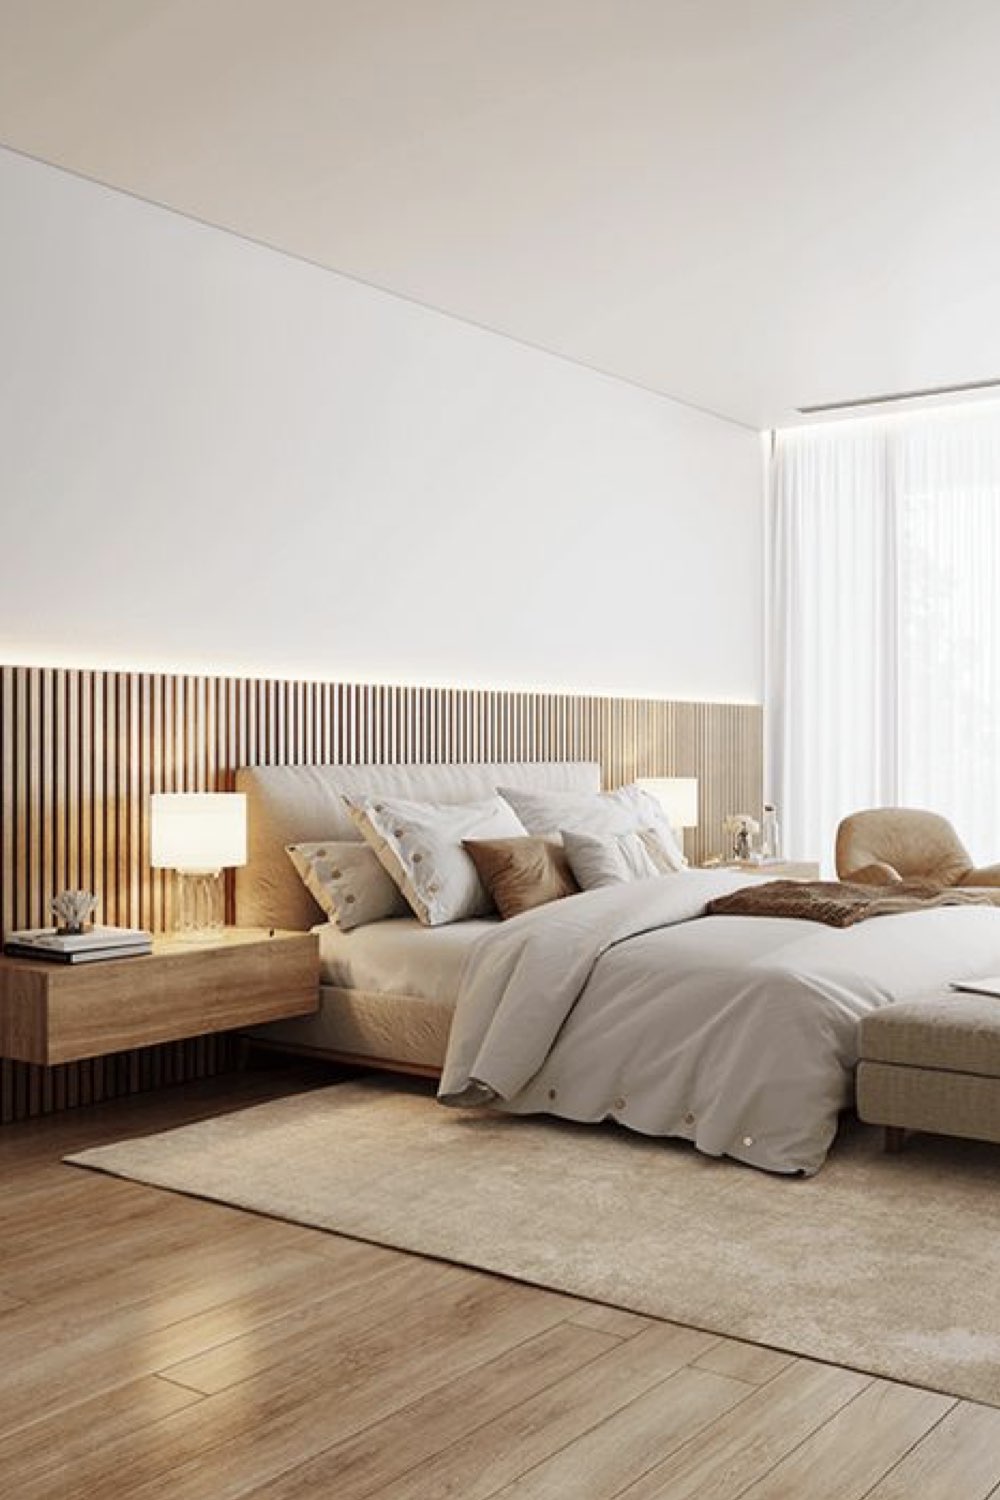 reussir decoration chambre adulte moderne et chaleureuse soubassement tête de lit tasseaux de bois table de nuit suspendue accrochée au mur couleur neutre et douce